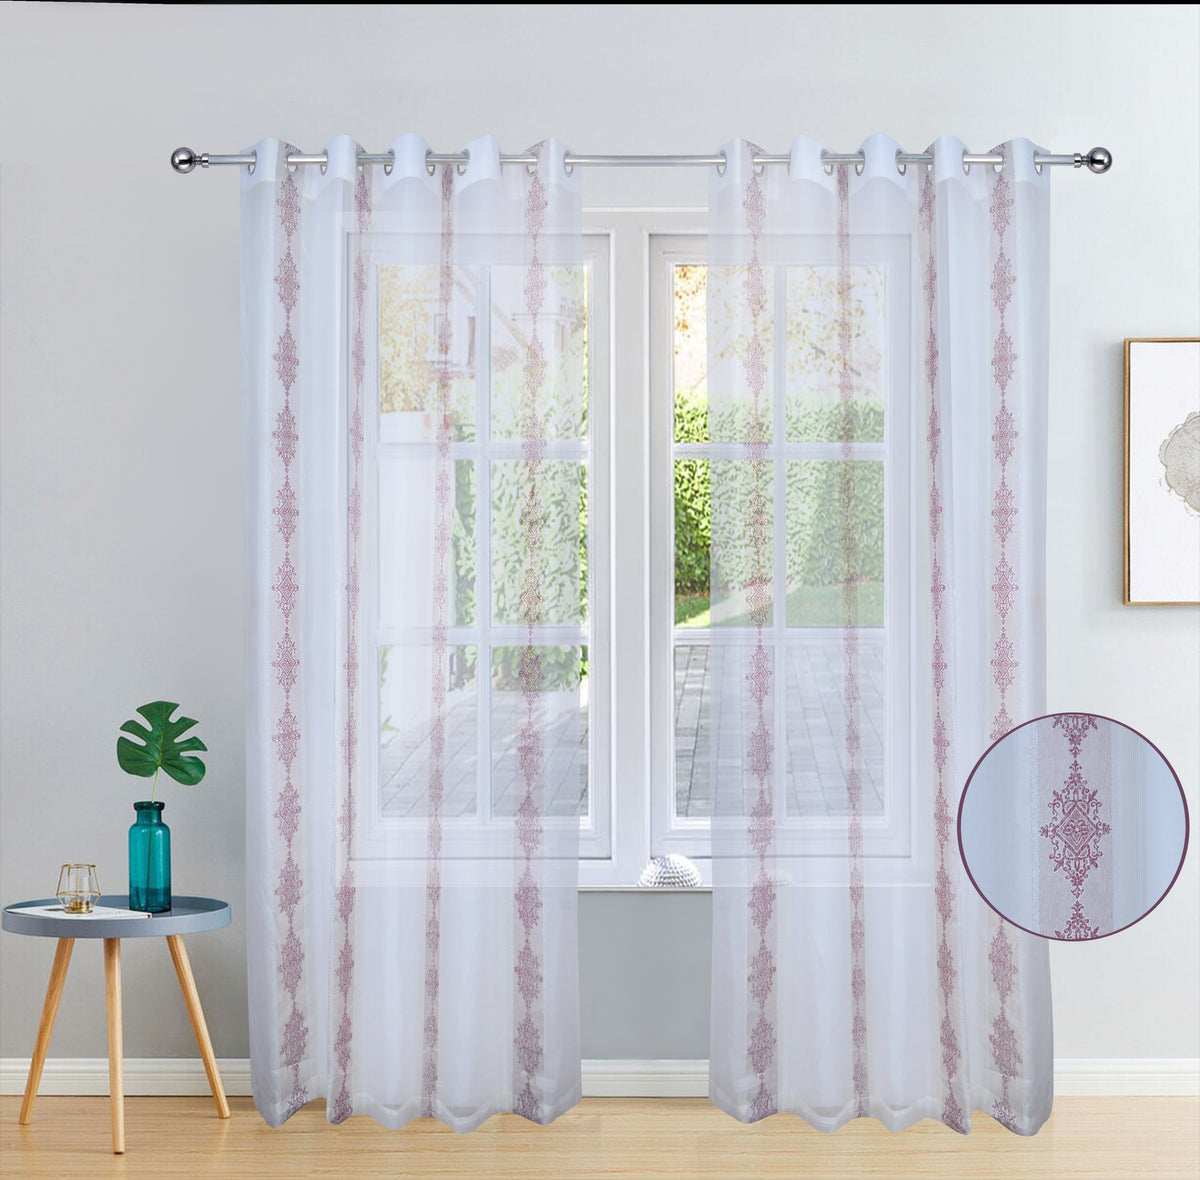 Livingroom curtains